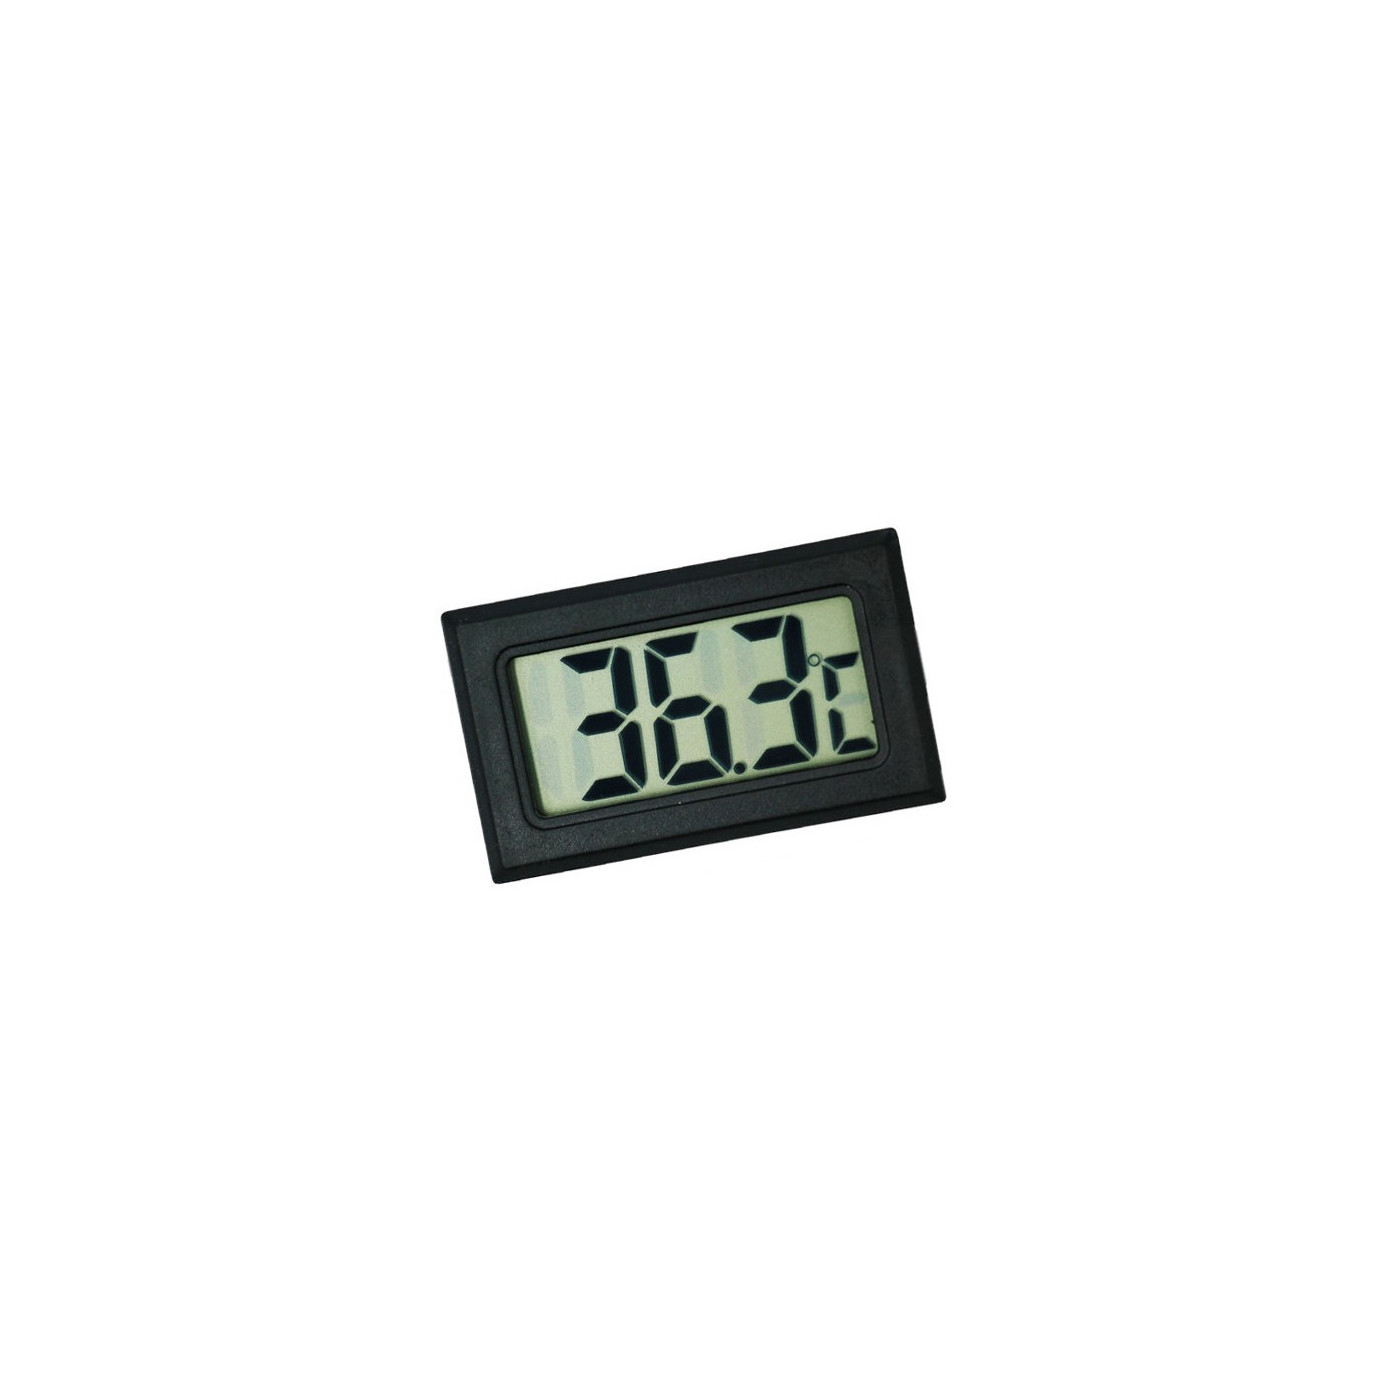 Miernik temperatury wewnętrznej LCD (czarny)